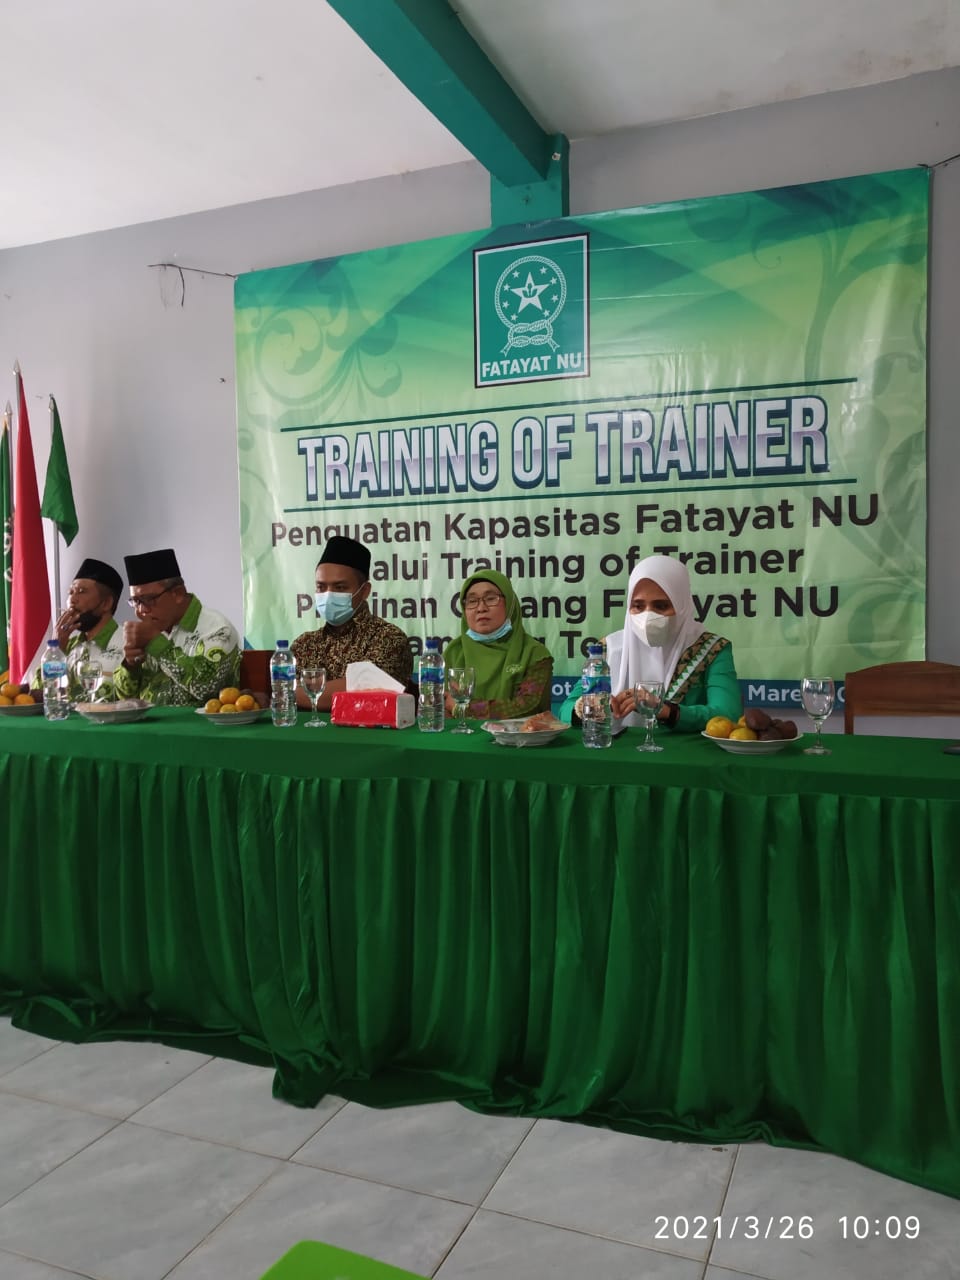 PC Fatayat NU Lampung Tengah Gelar Training Of Trainer